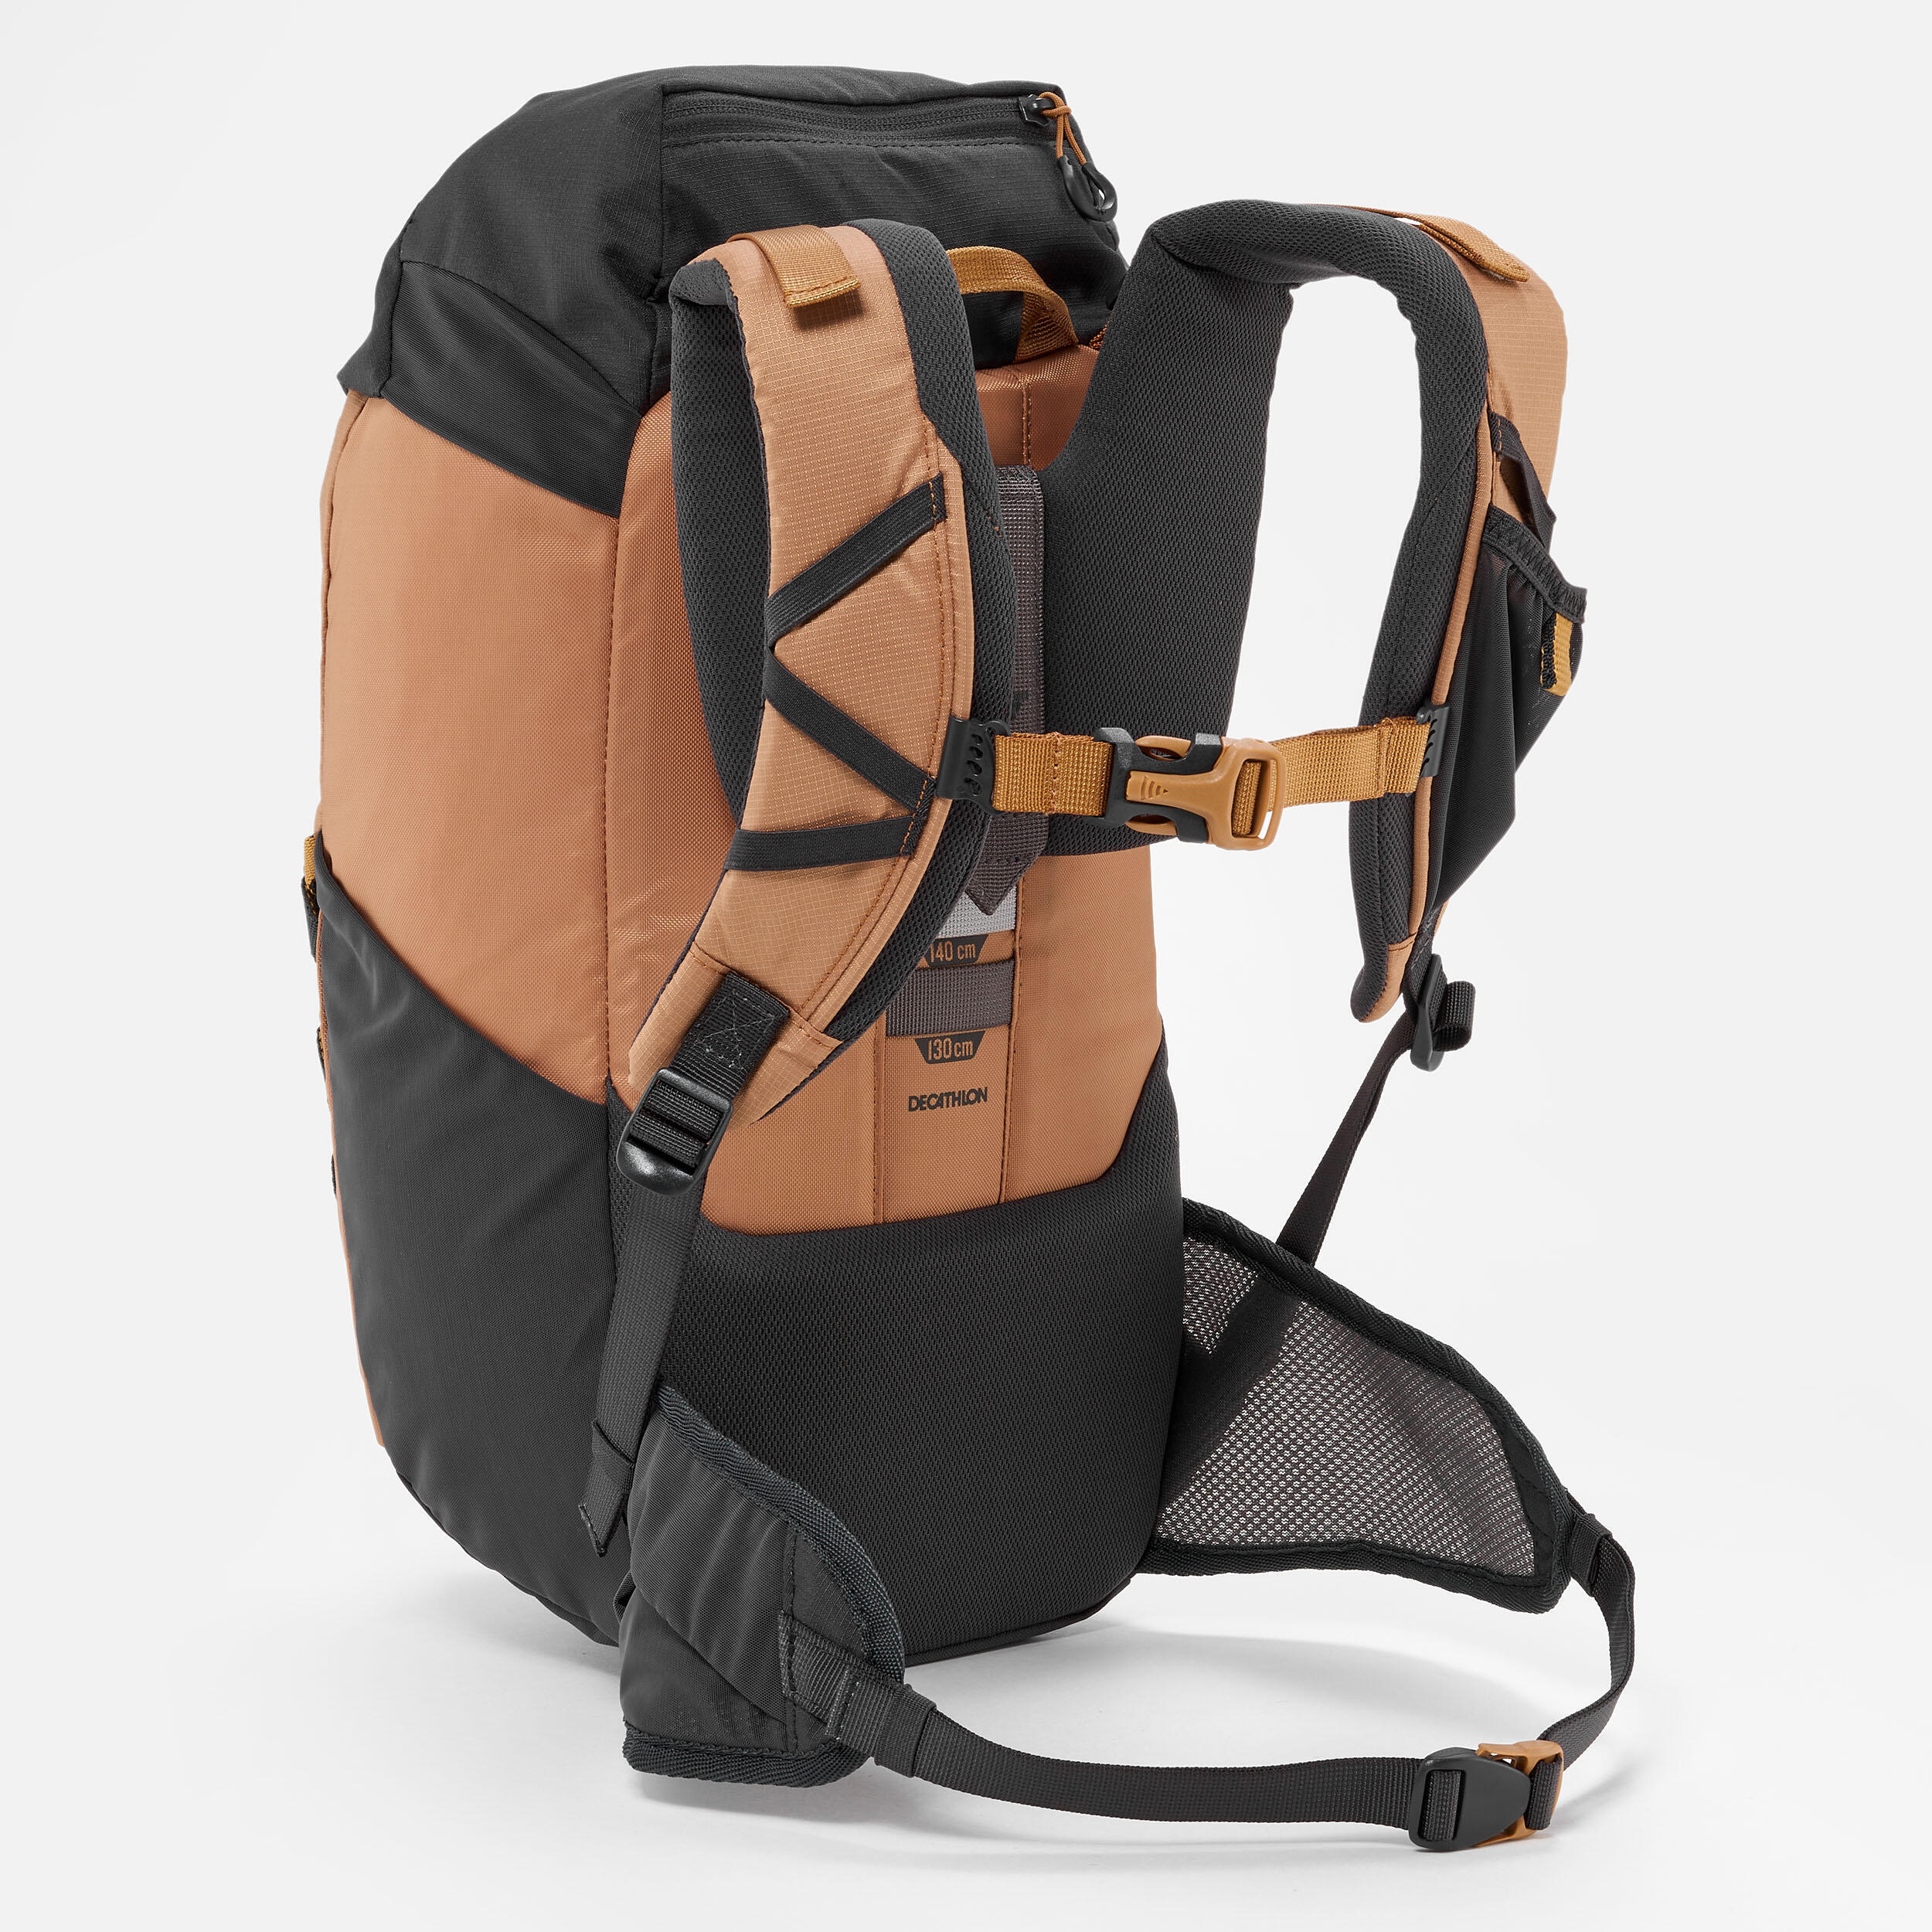 Kids' hiking backpack 18L - MH500 6/12